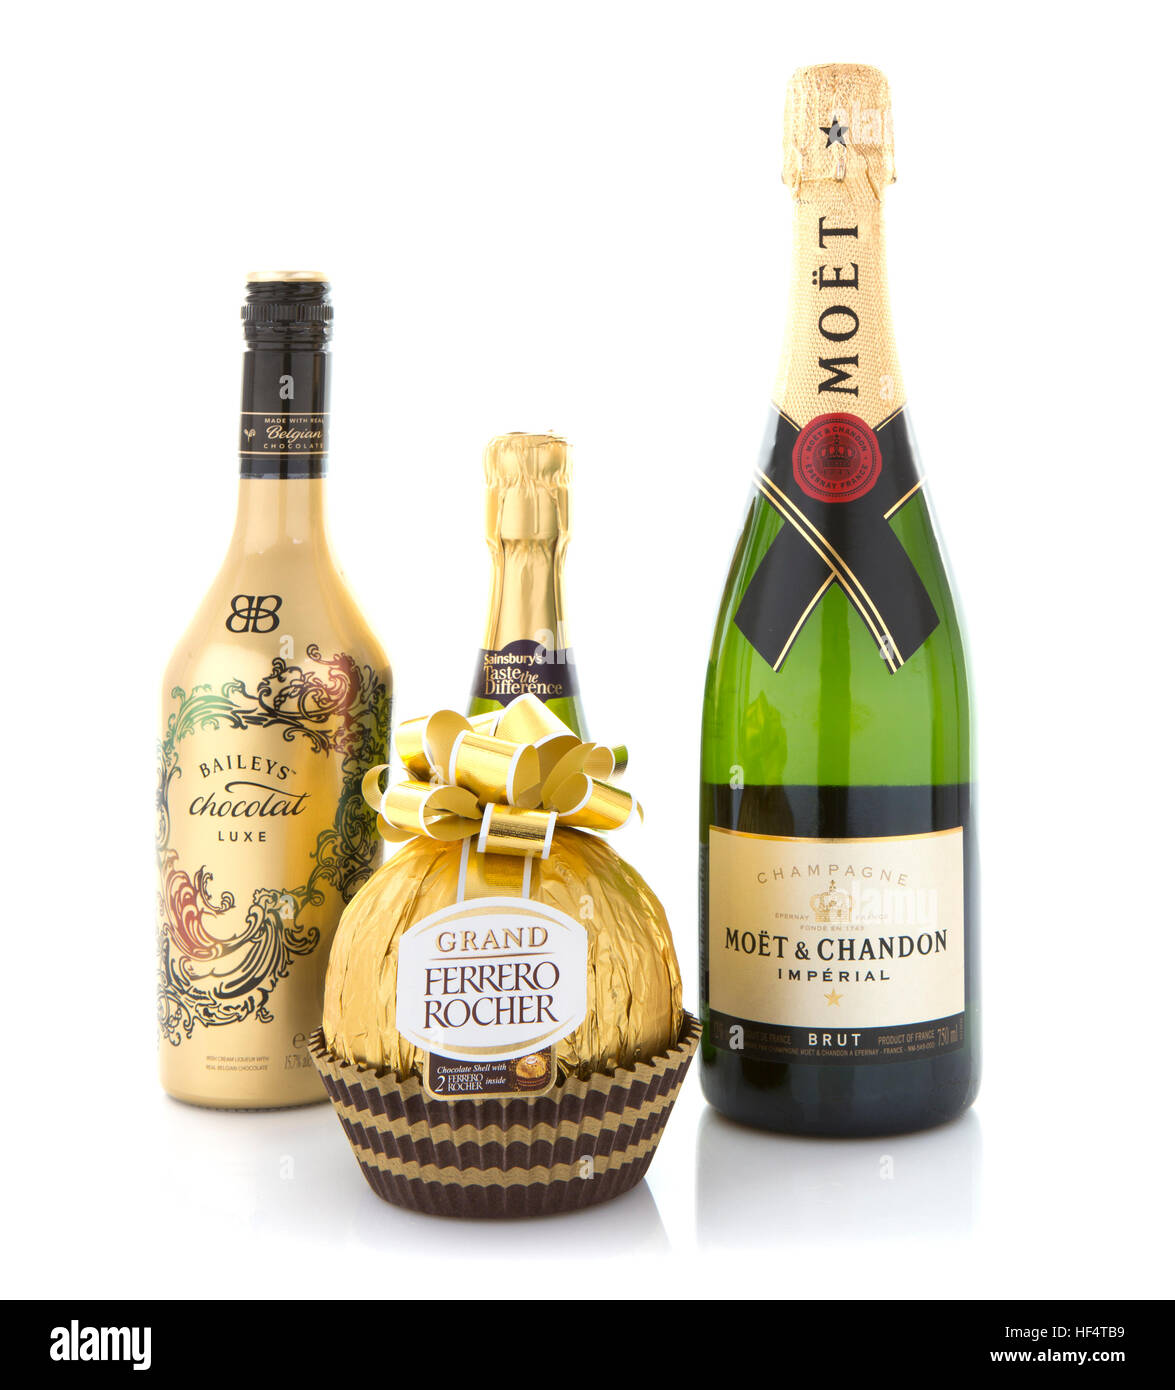 Moet und Chandon Brut Imperial Champagner, Ferrero Rocher und Baileys  Schokolade Luxe auf weißem Hintergrund Stockfotografie - Alamy